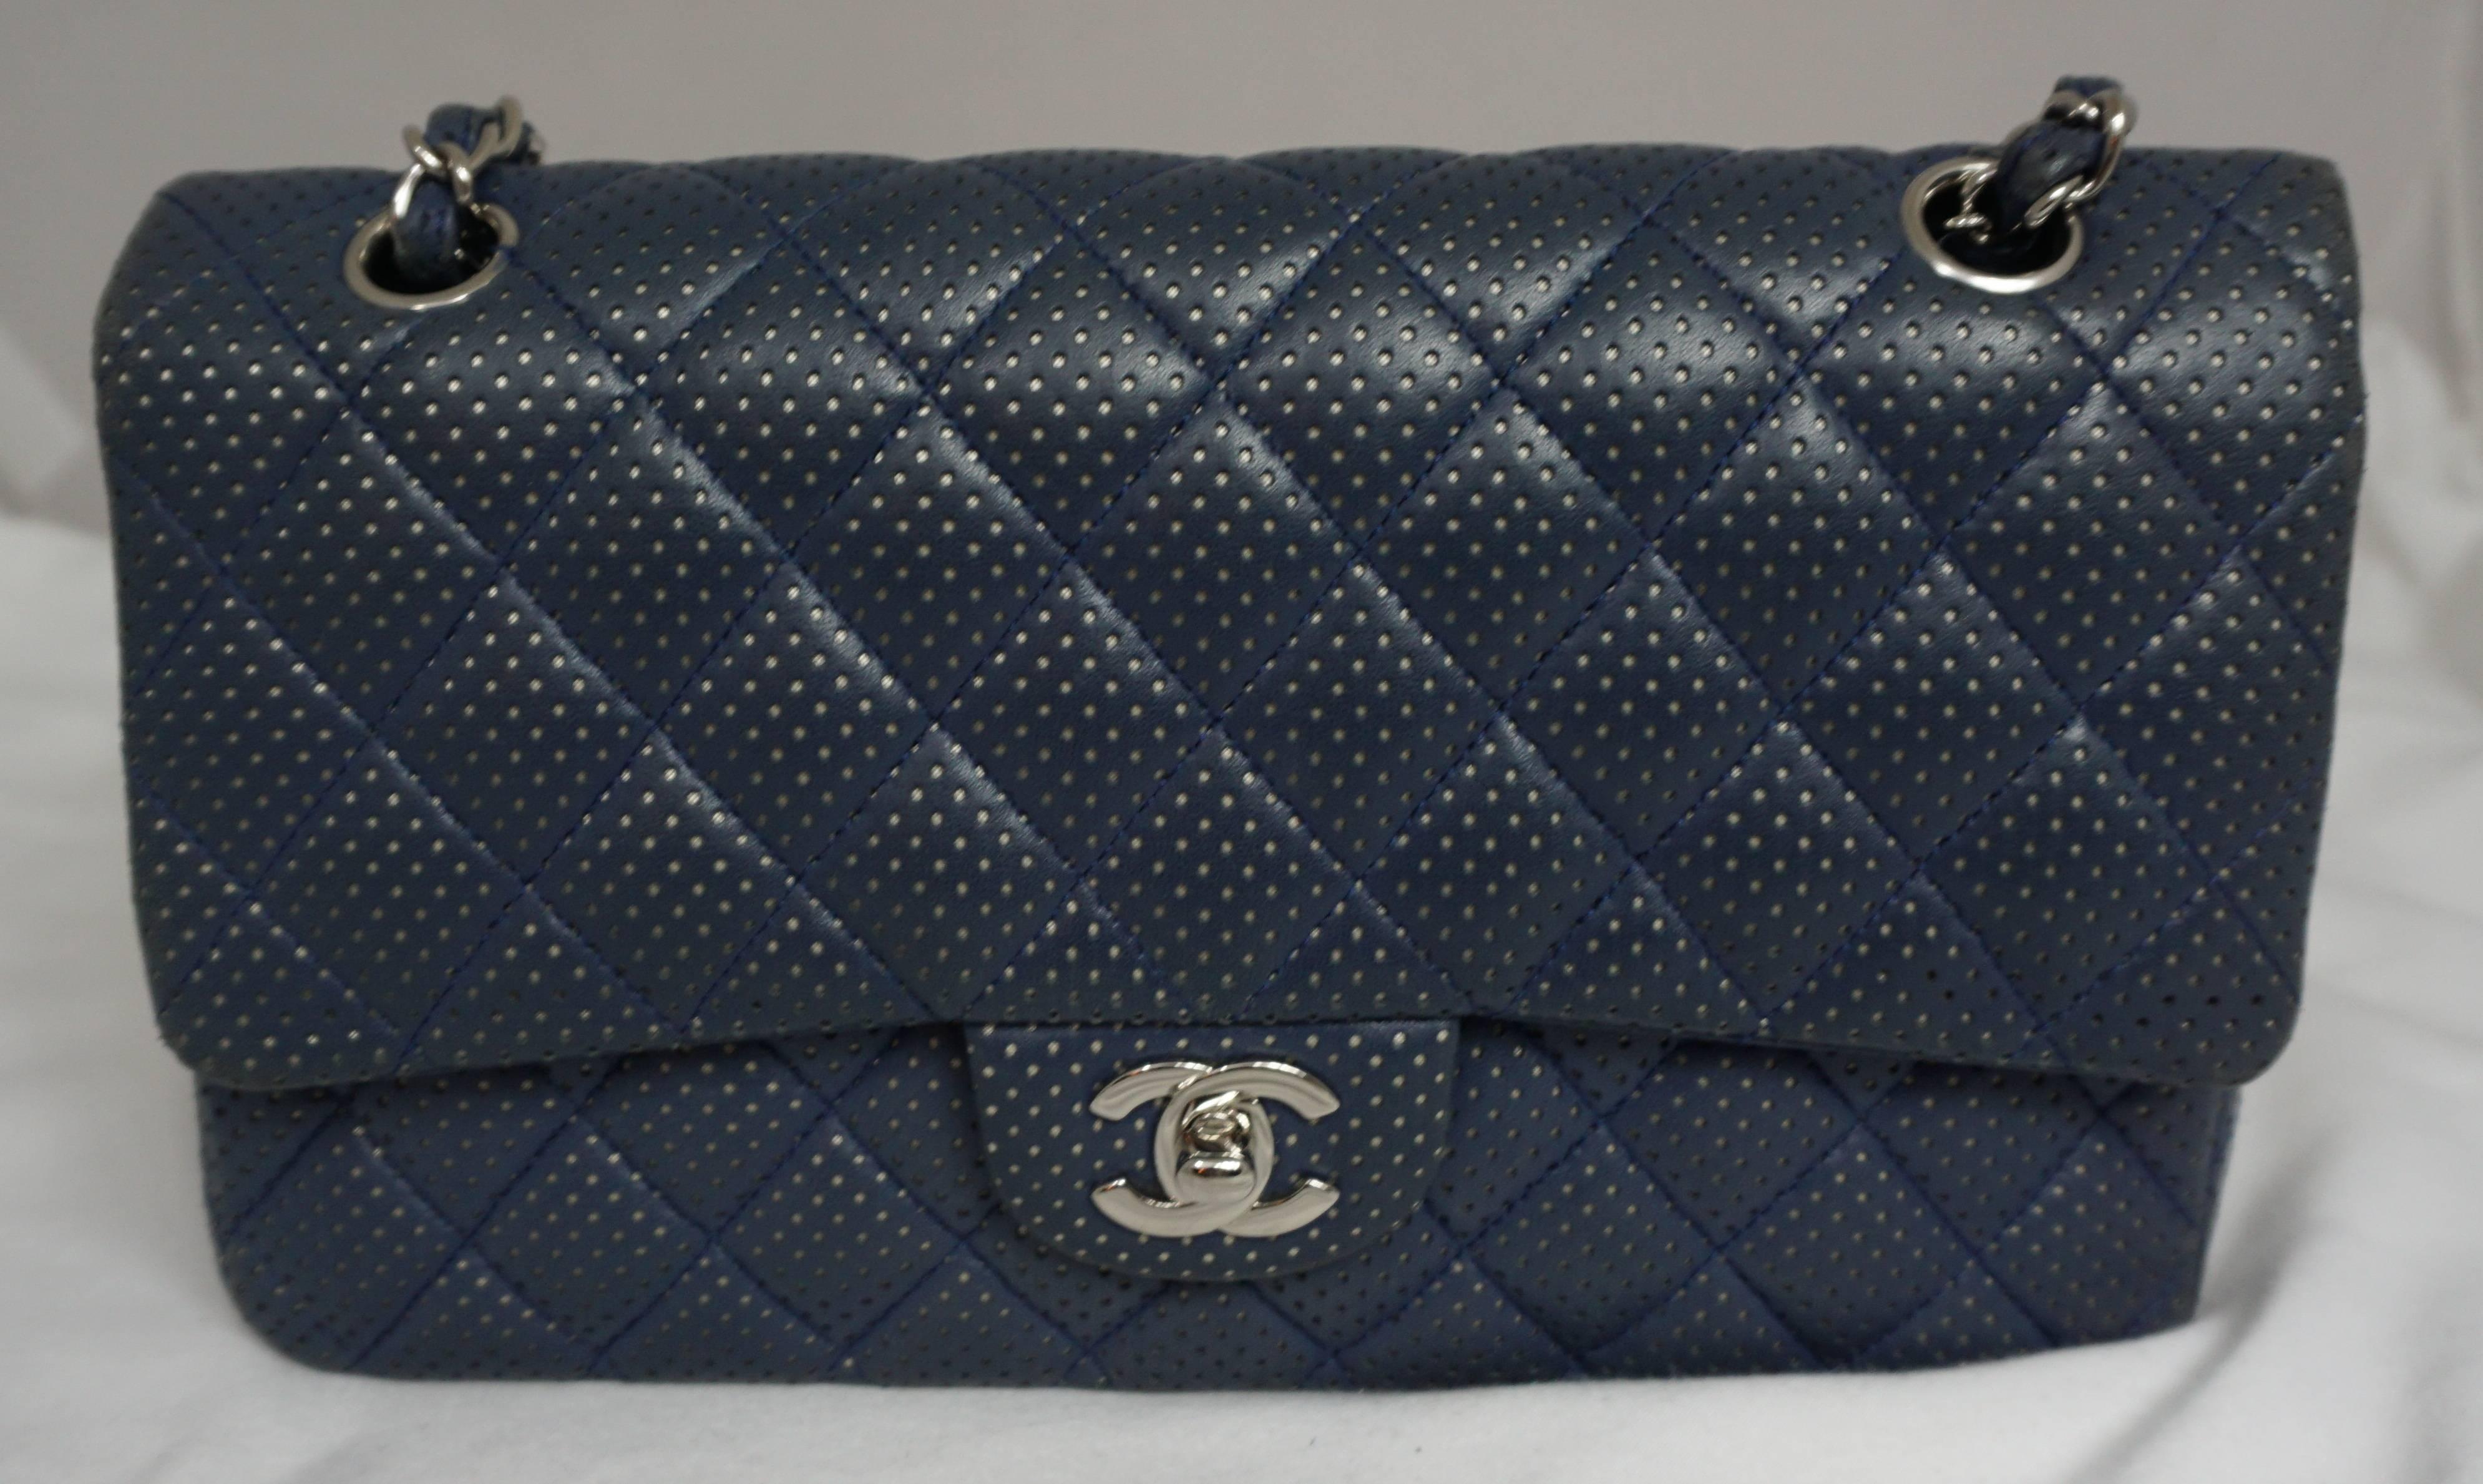 Chanel Chanel Blau/Silber Perforiertes Leder Medium Handtasche mit doppelter Klappe-SHW-2006 (Schwarz)